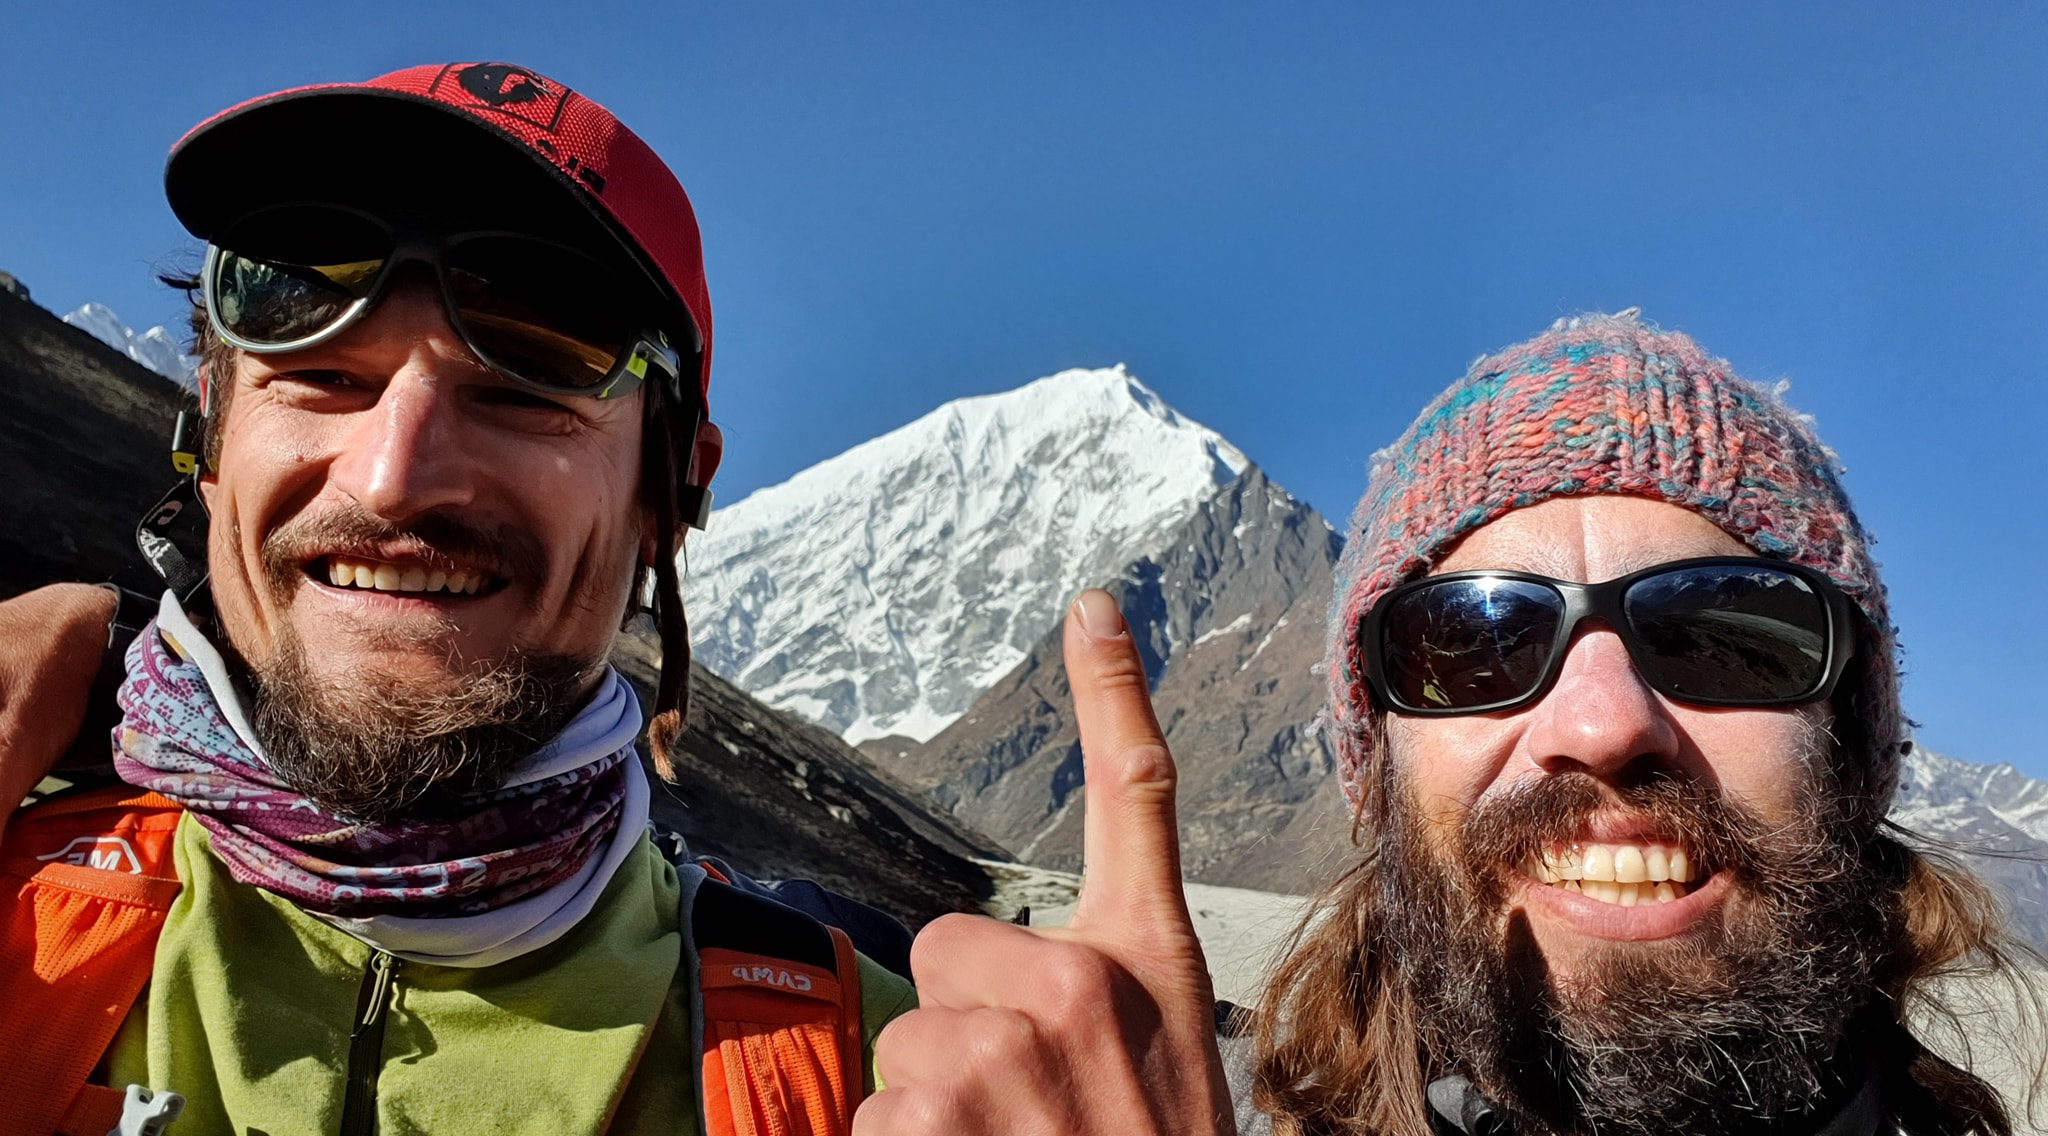 Адам Белецкий (Adam Bielecki) и Феликс Берг (Felix Berg) на фоне Лангтанг Лирунг (Langtang Lirung, 7227 м). Фото Adam Bielecki 